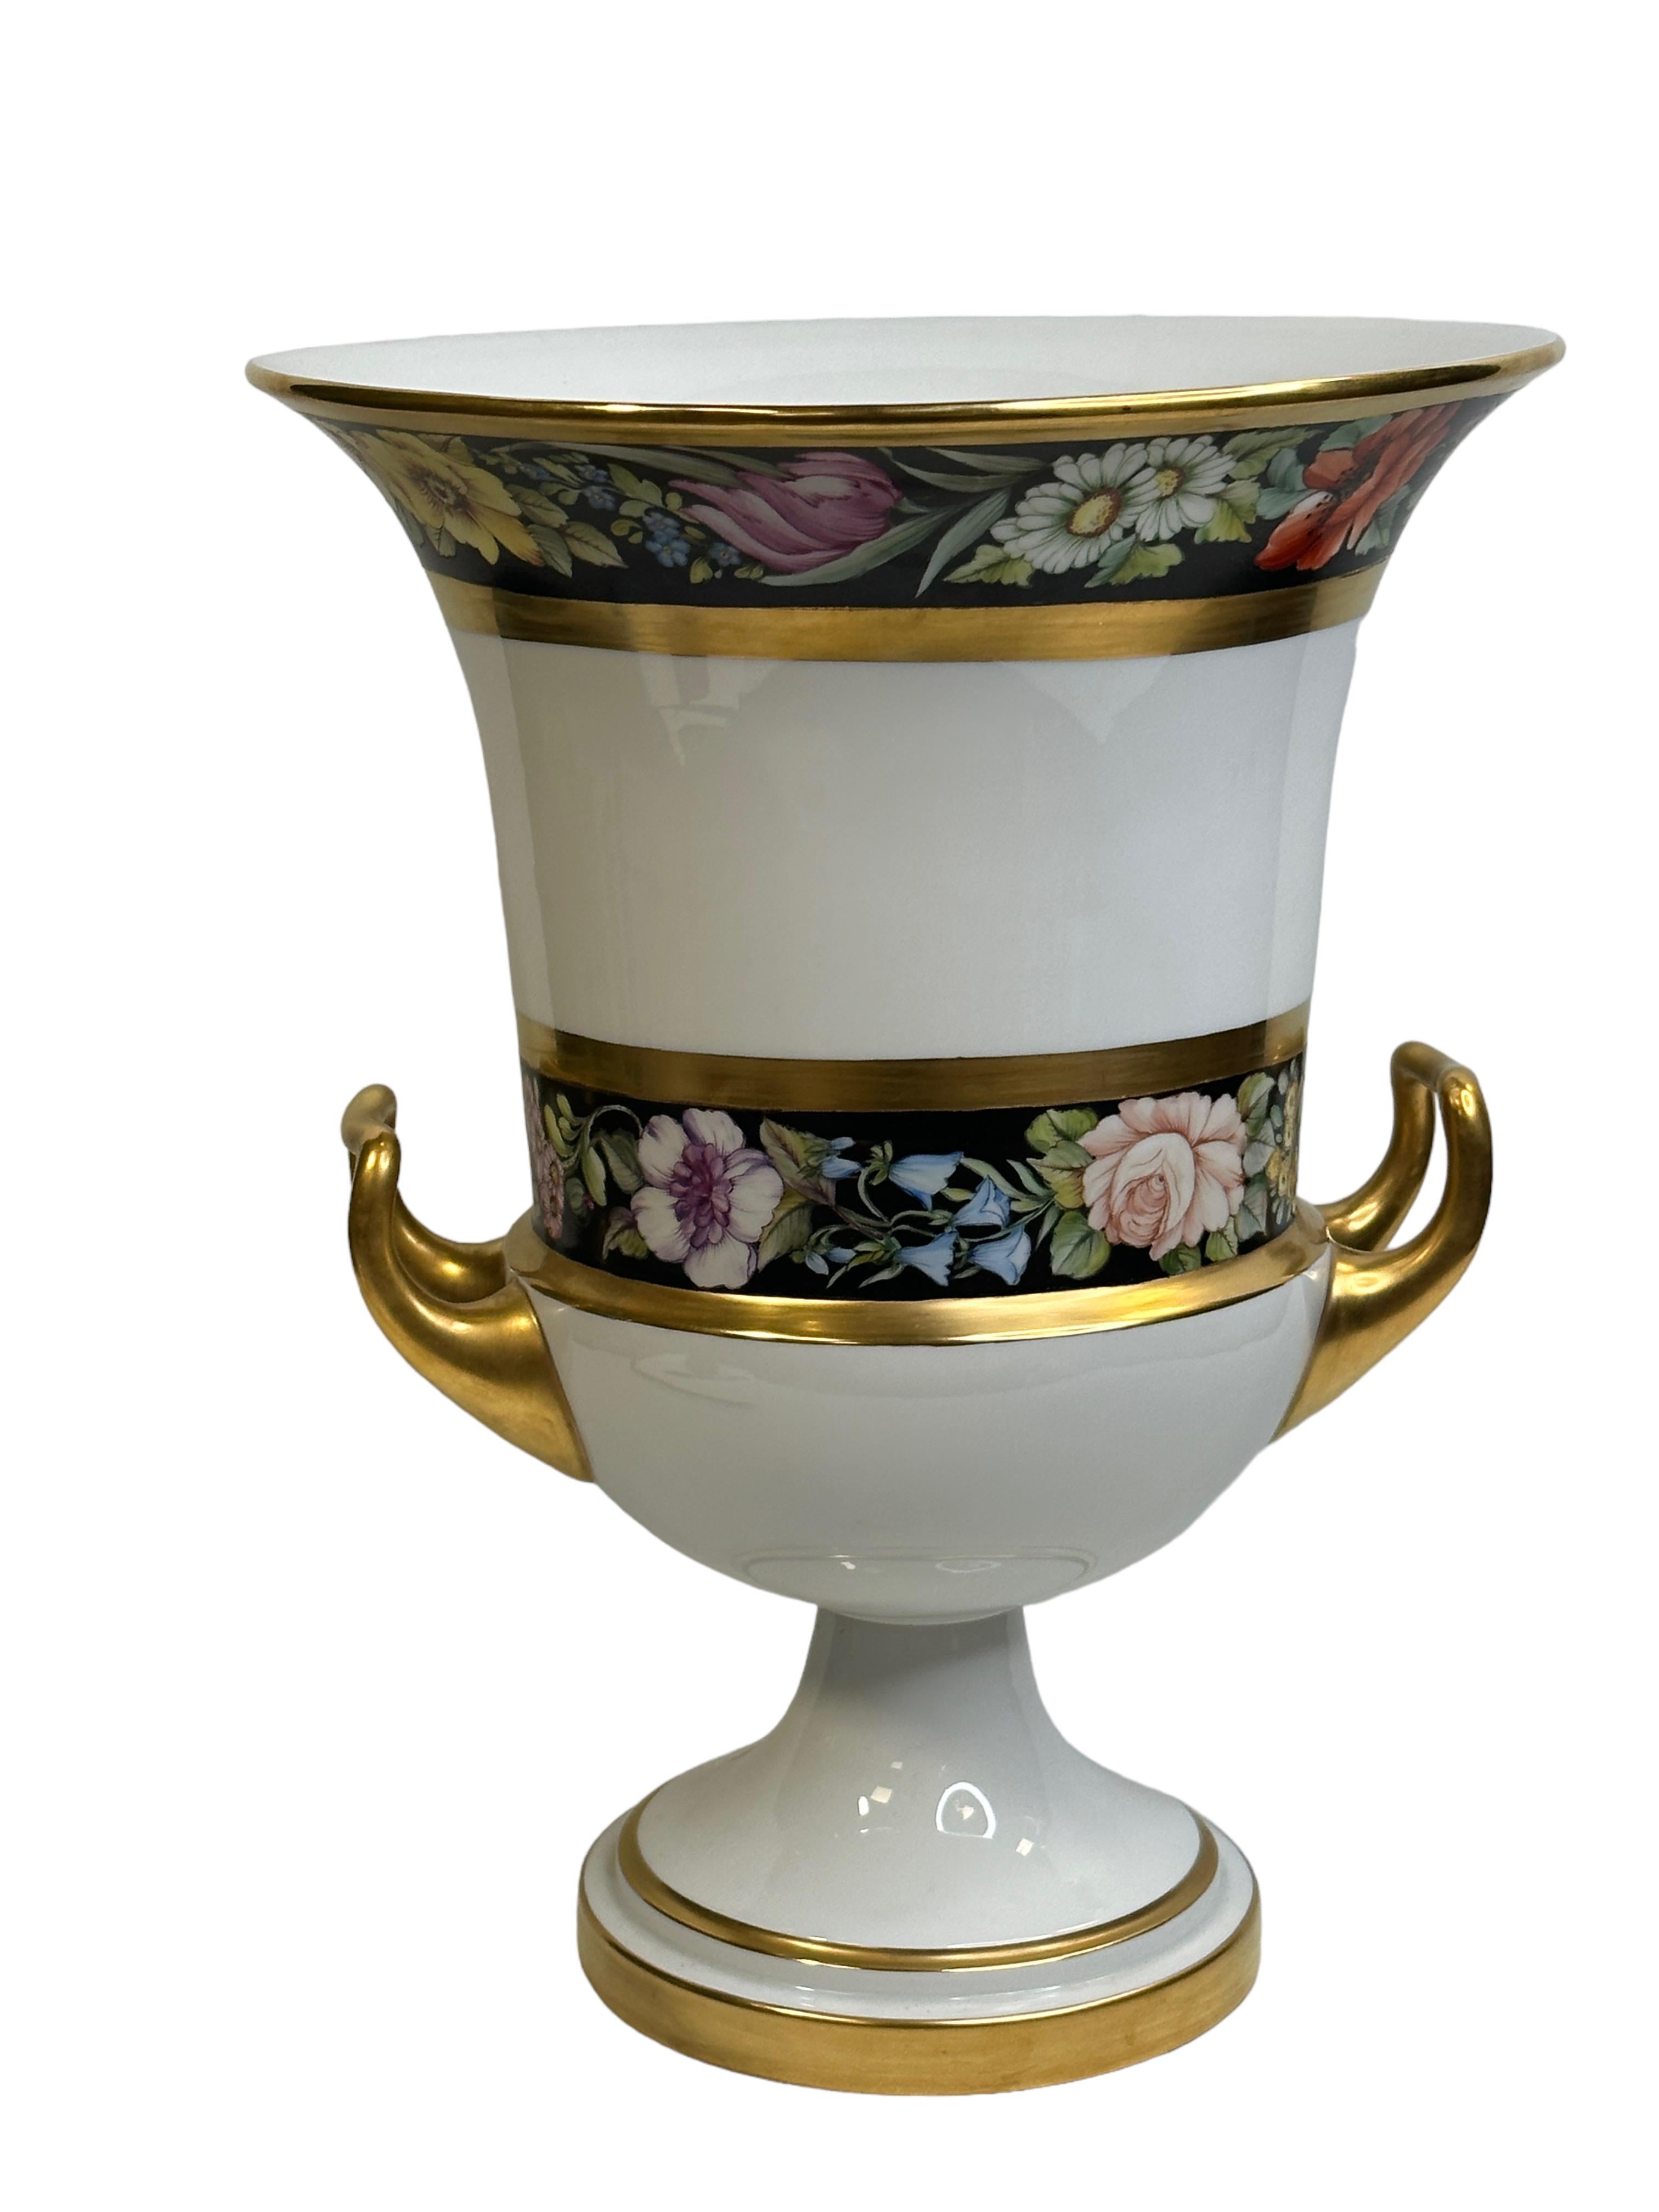 Louis XV Exceptional Fürstenberg Pedestal Medici form Twin Handled Urn Vase Unique Sample For Sale